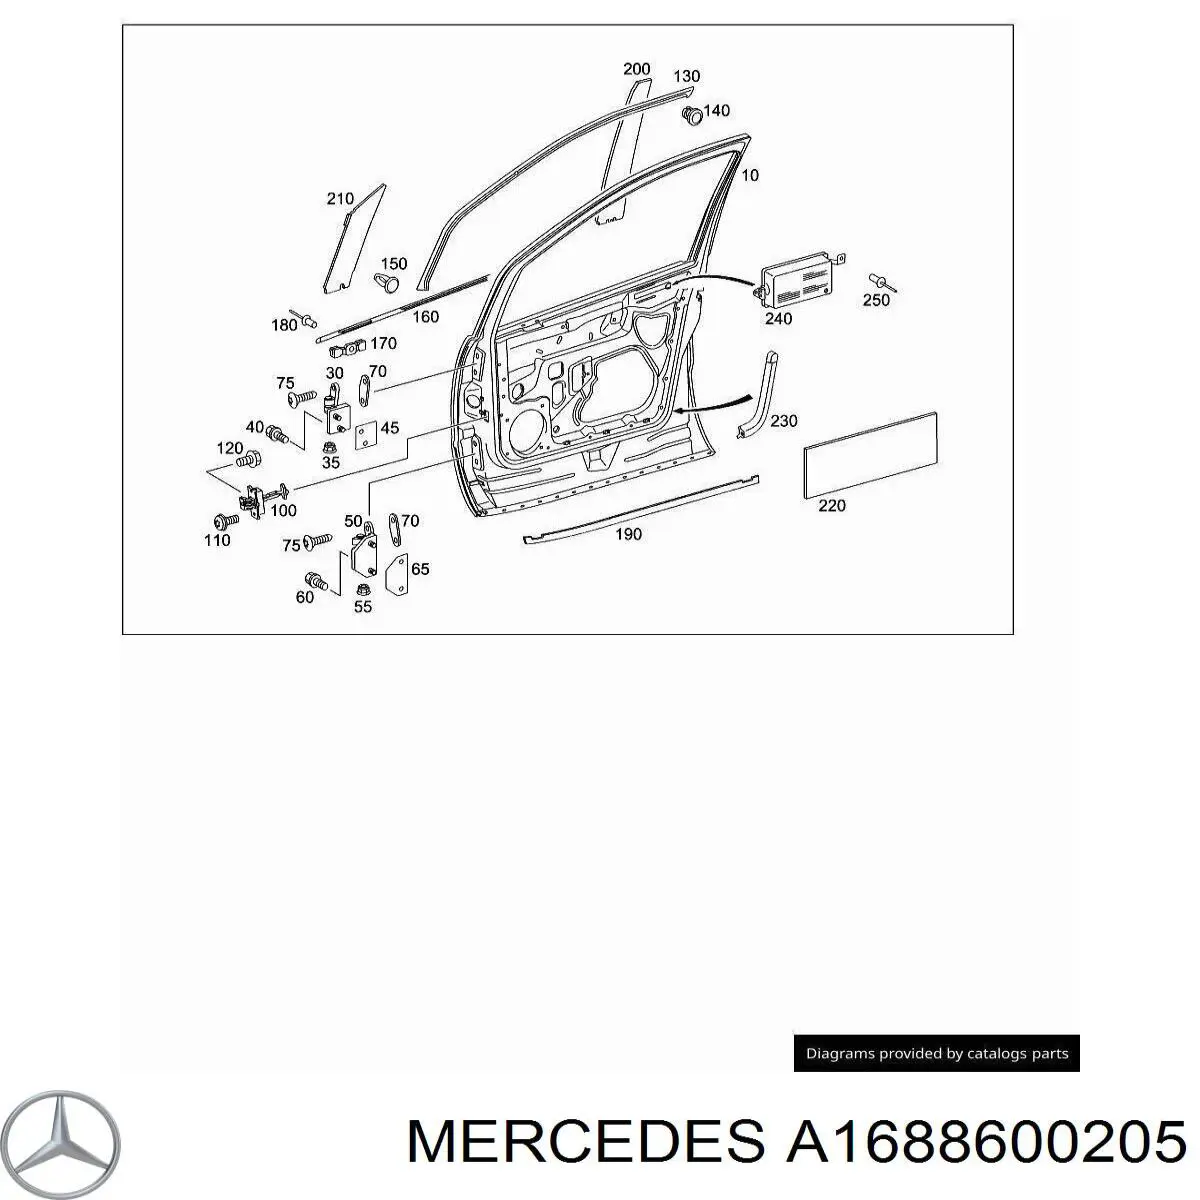 A1688600205 Mercedes airbag puerta delantera derecha